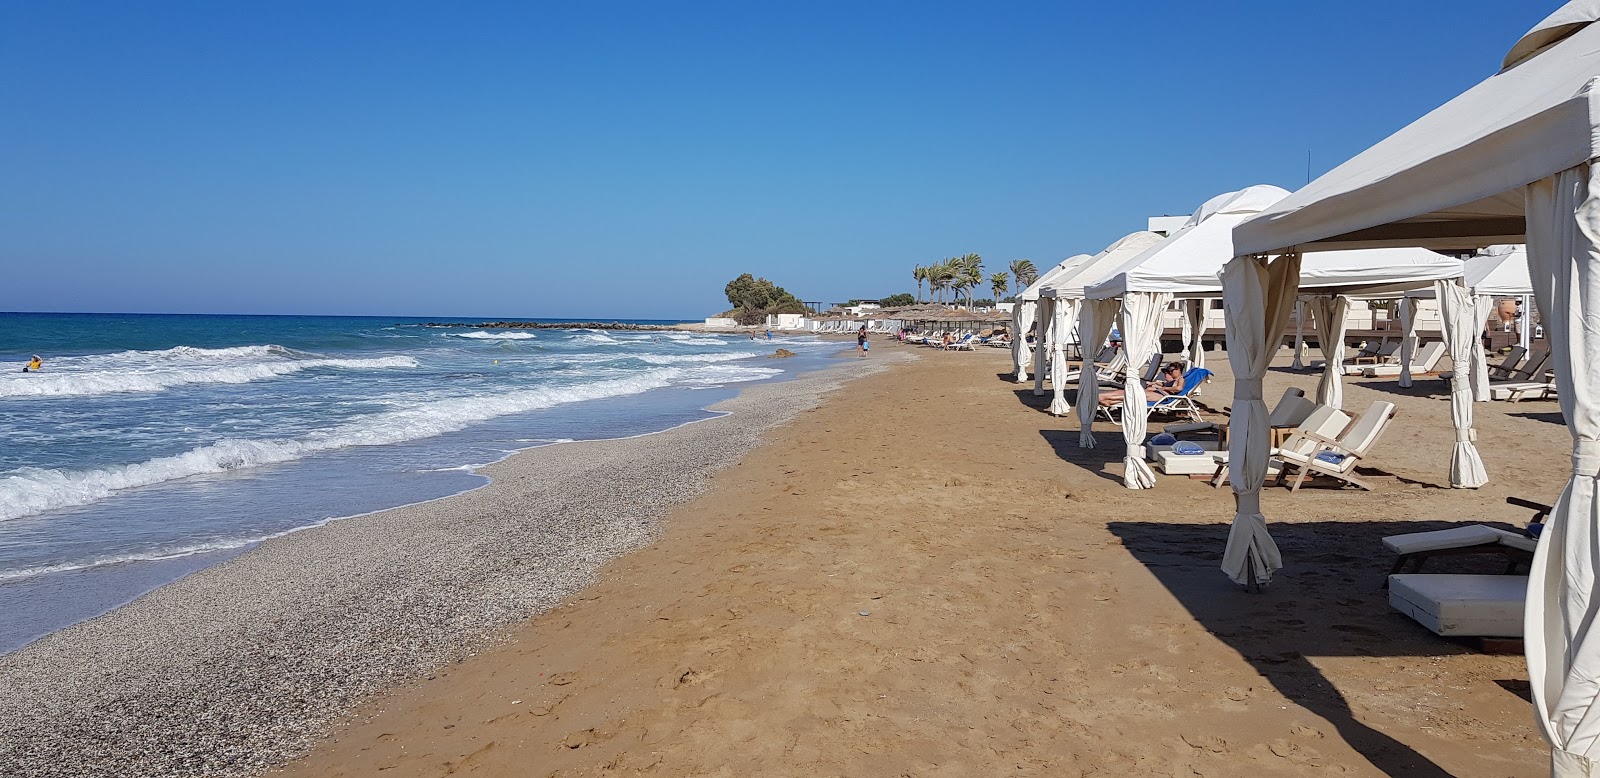 Foto av Agios Pelagia beach med brunsand yta